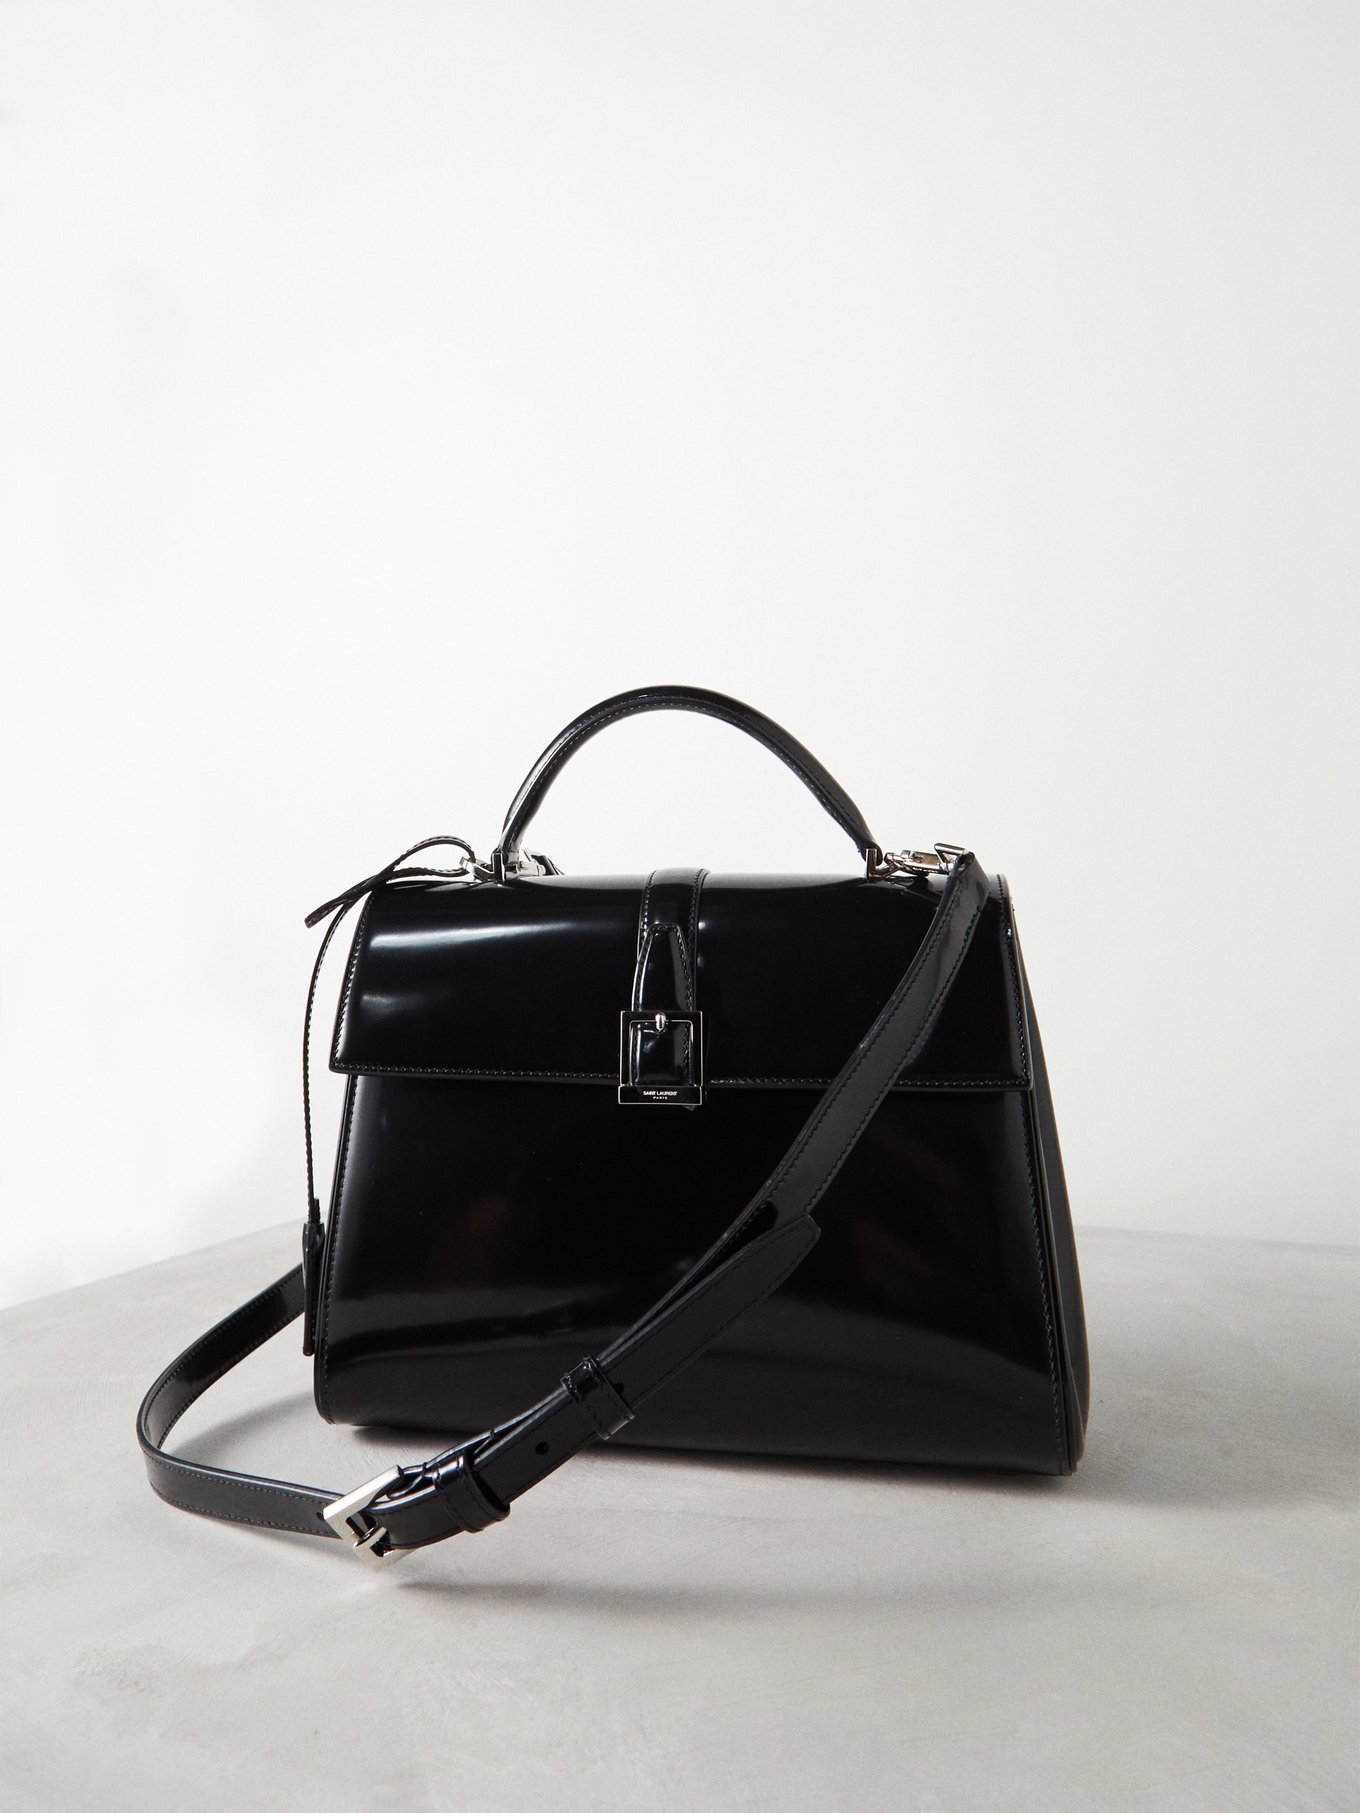 Black Le Fermoir leather cross-body bag, Saint Laurent